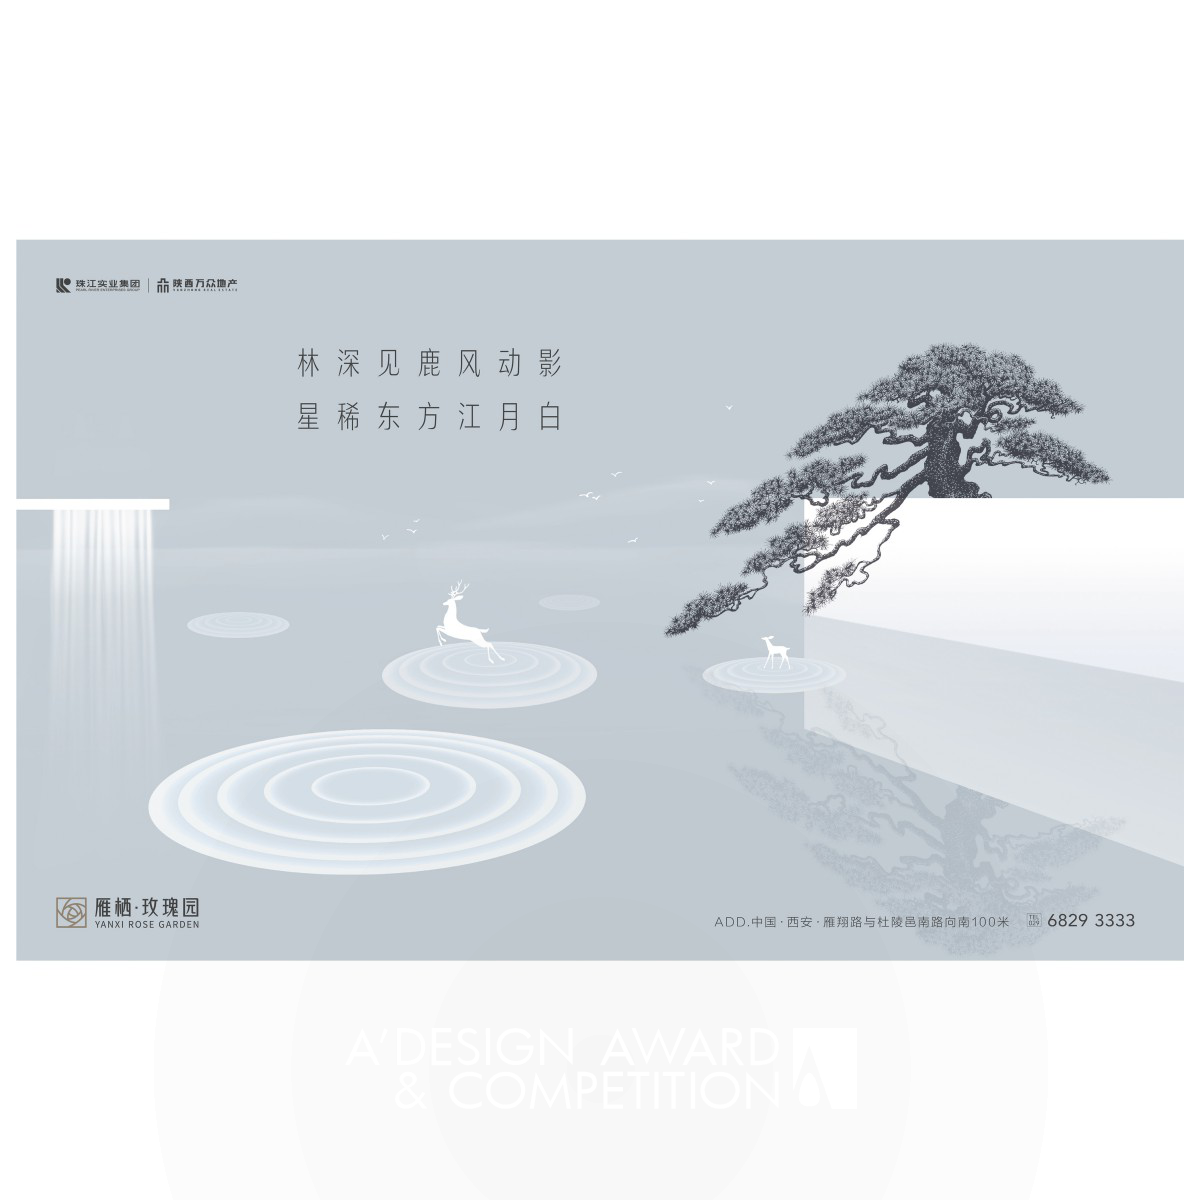 Yanxi Rose Garden Image Advertising by Yong Huang Iron Advertising, Marketing and Communication Design Award Winner 2019 